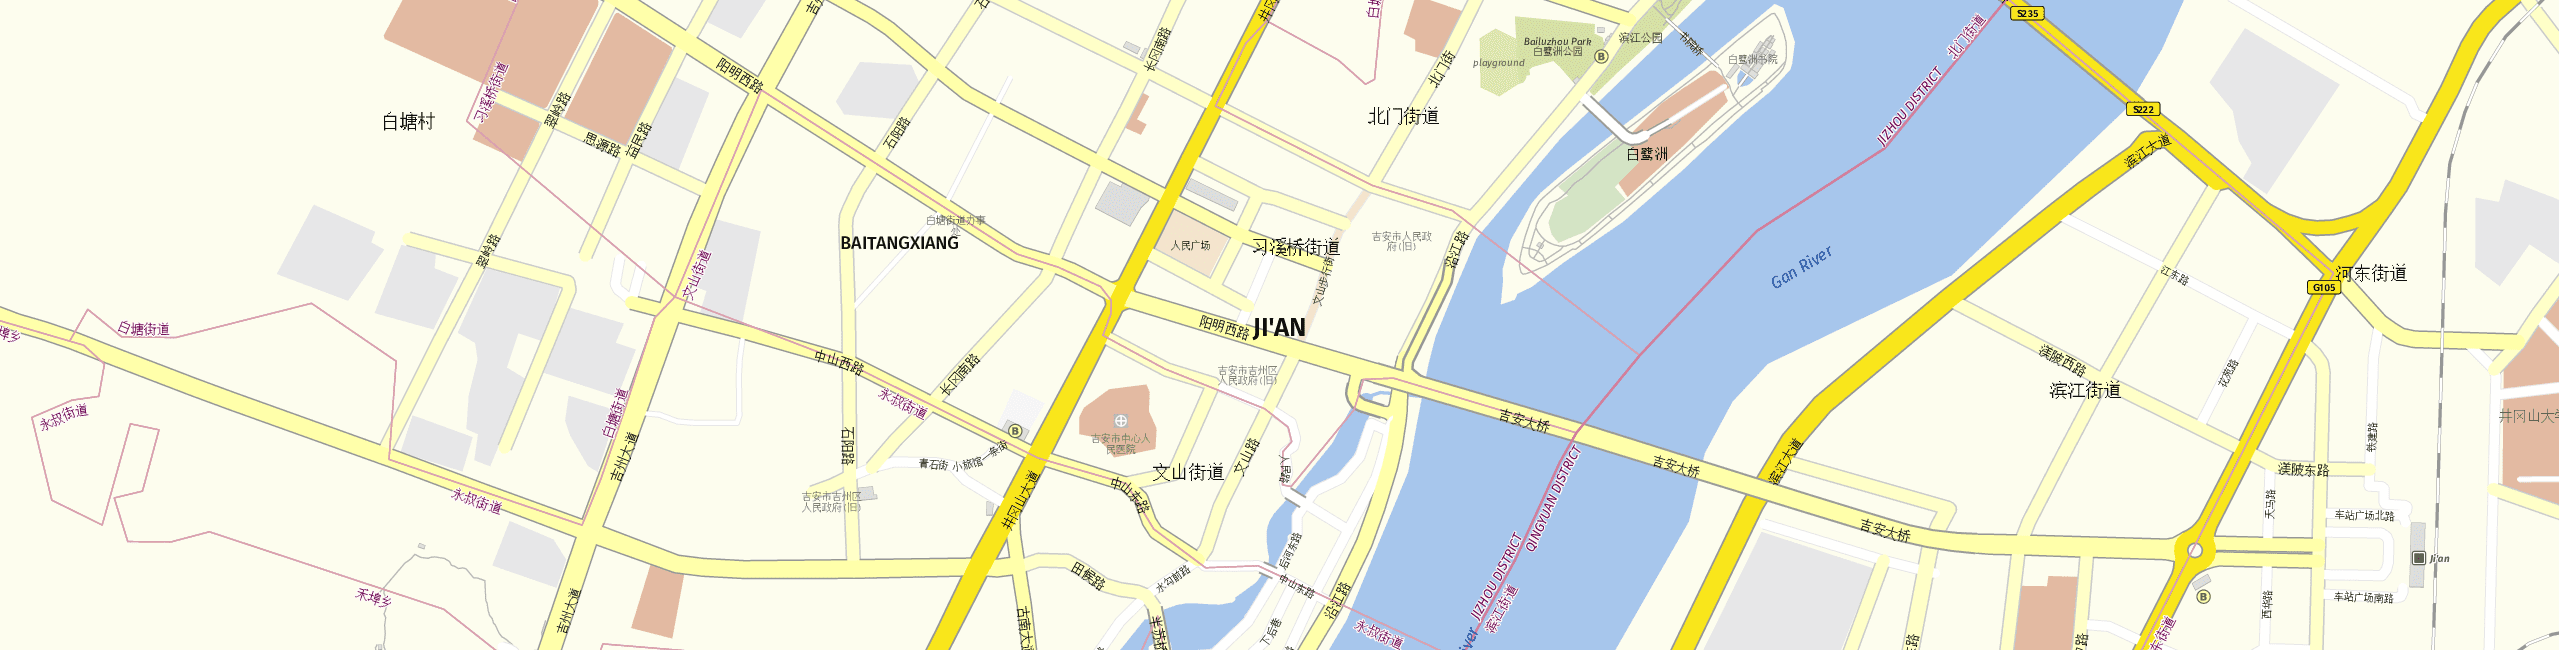 Stadtplan Ji’an zum Downloaden.